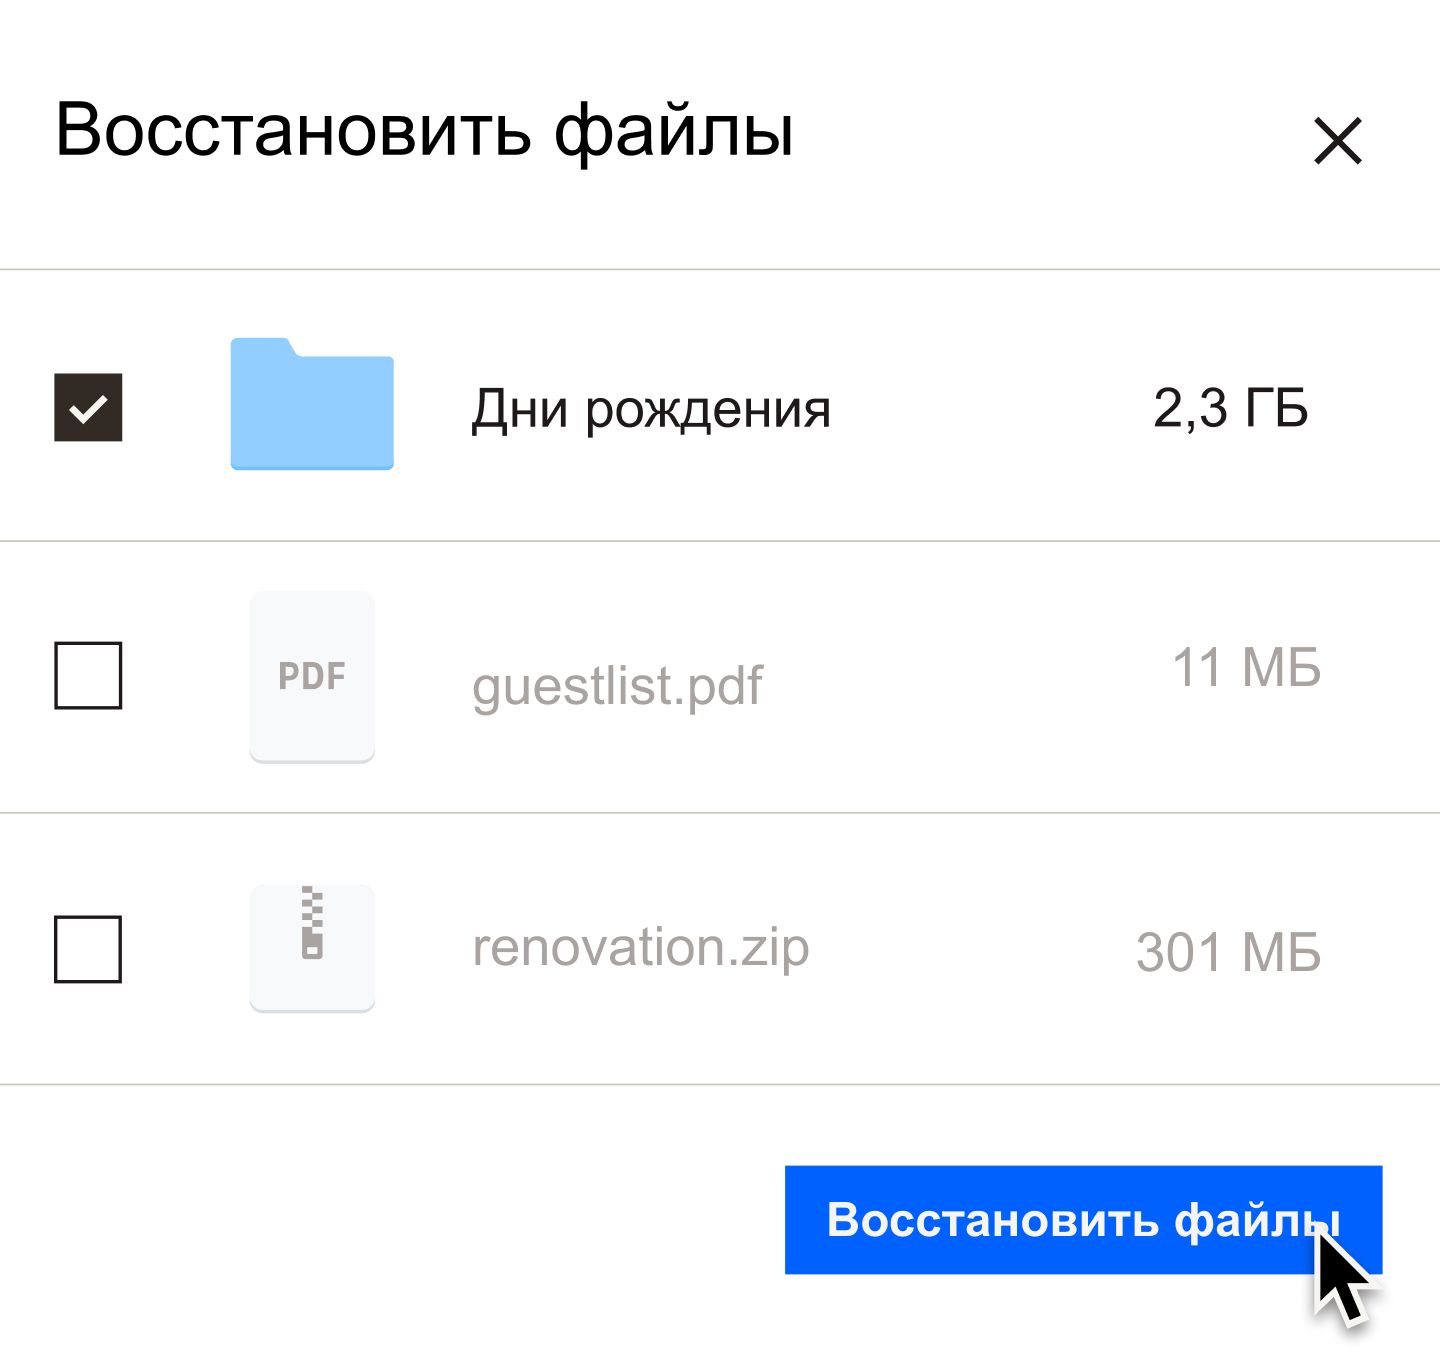 Пользователь нажимает на синюю кнопку «Восстановить файлы»